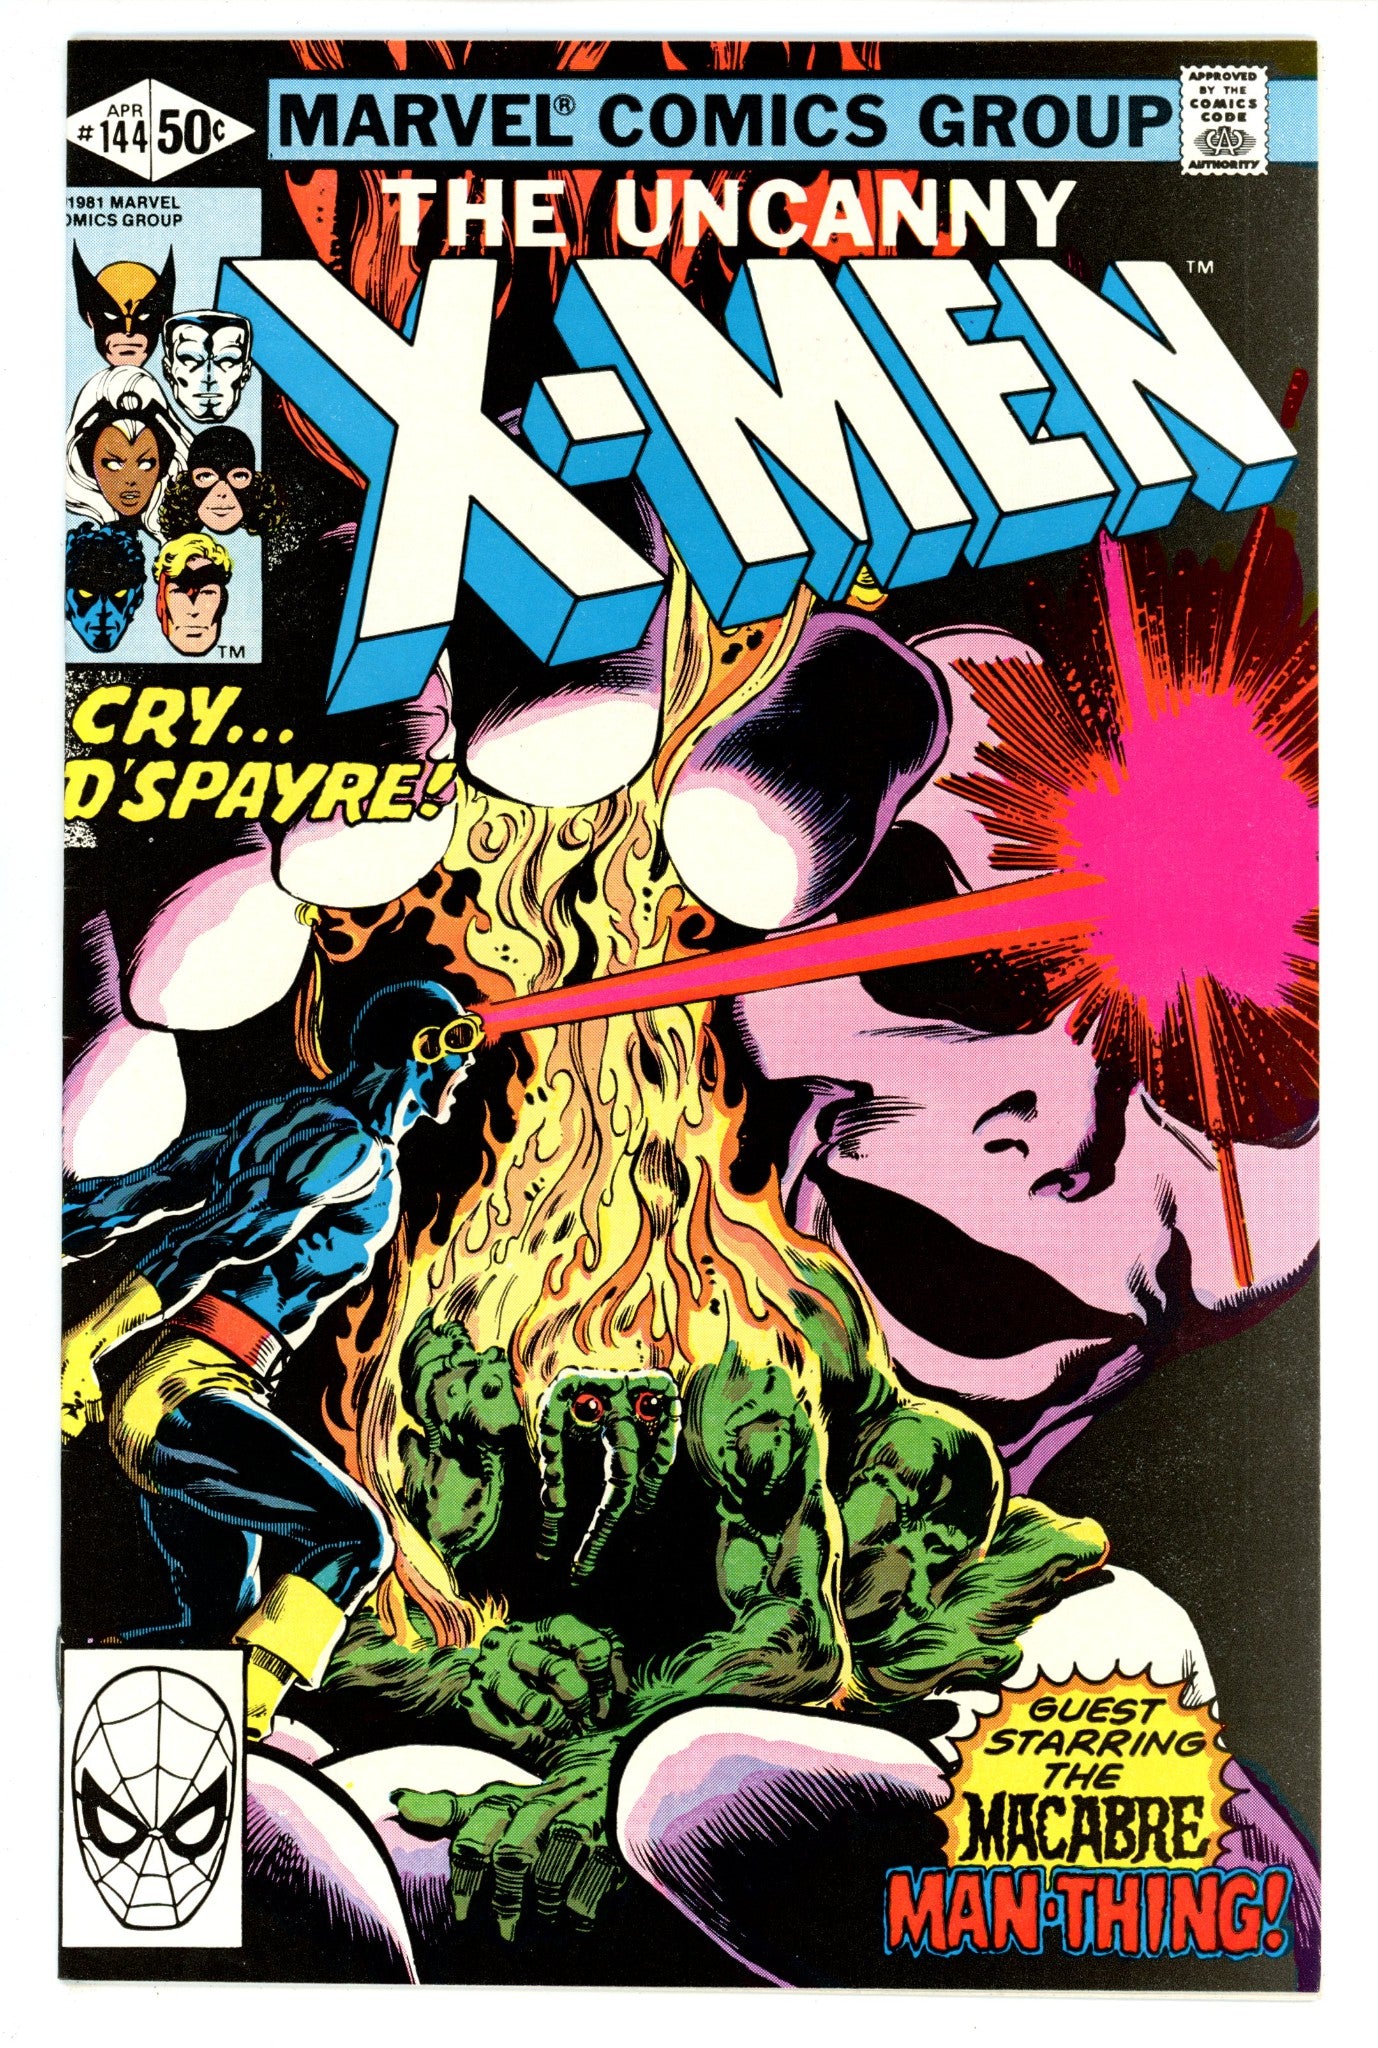 The Uncanny X-Men Vol 1 144 VF- (7.5) (1981) 